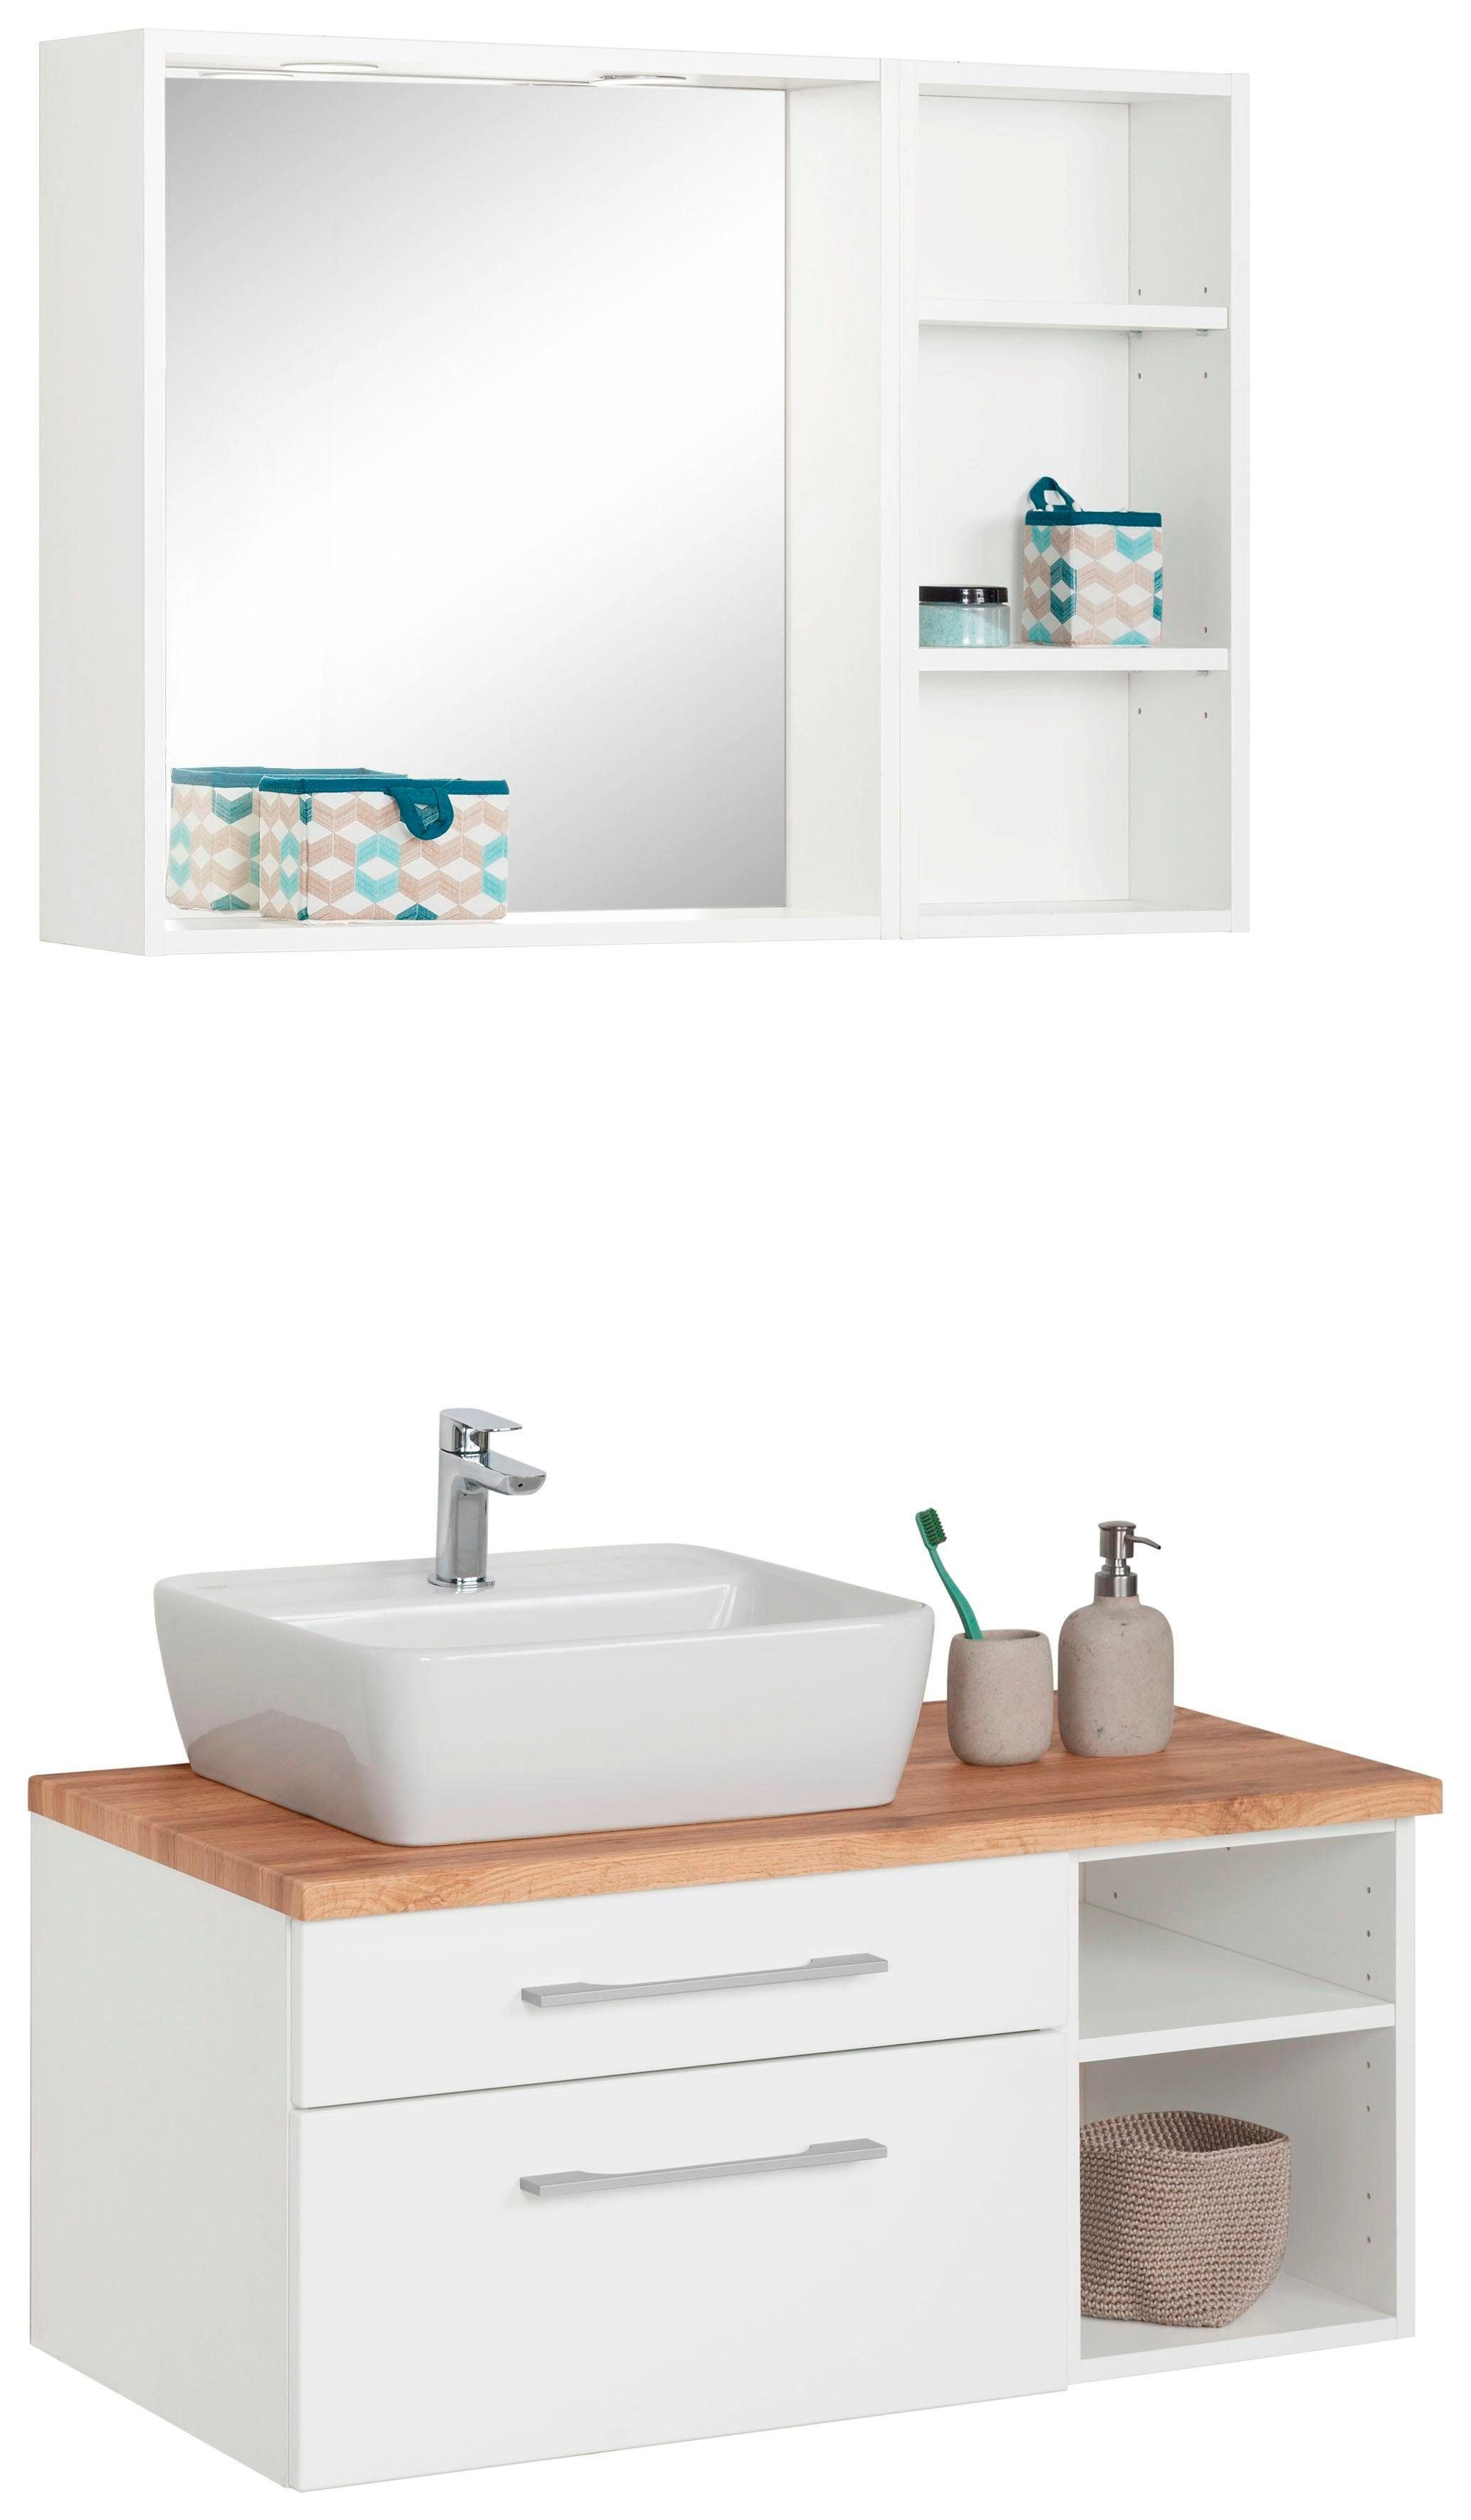 held moebel badkamerserie davos wastafelmeubel met rek en spiegel (3-delig) wit